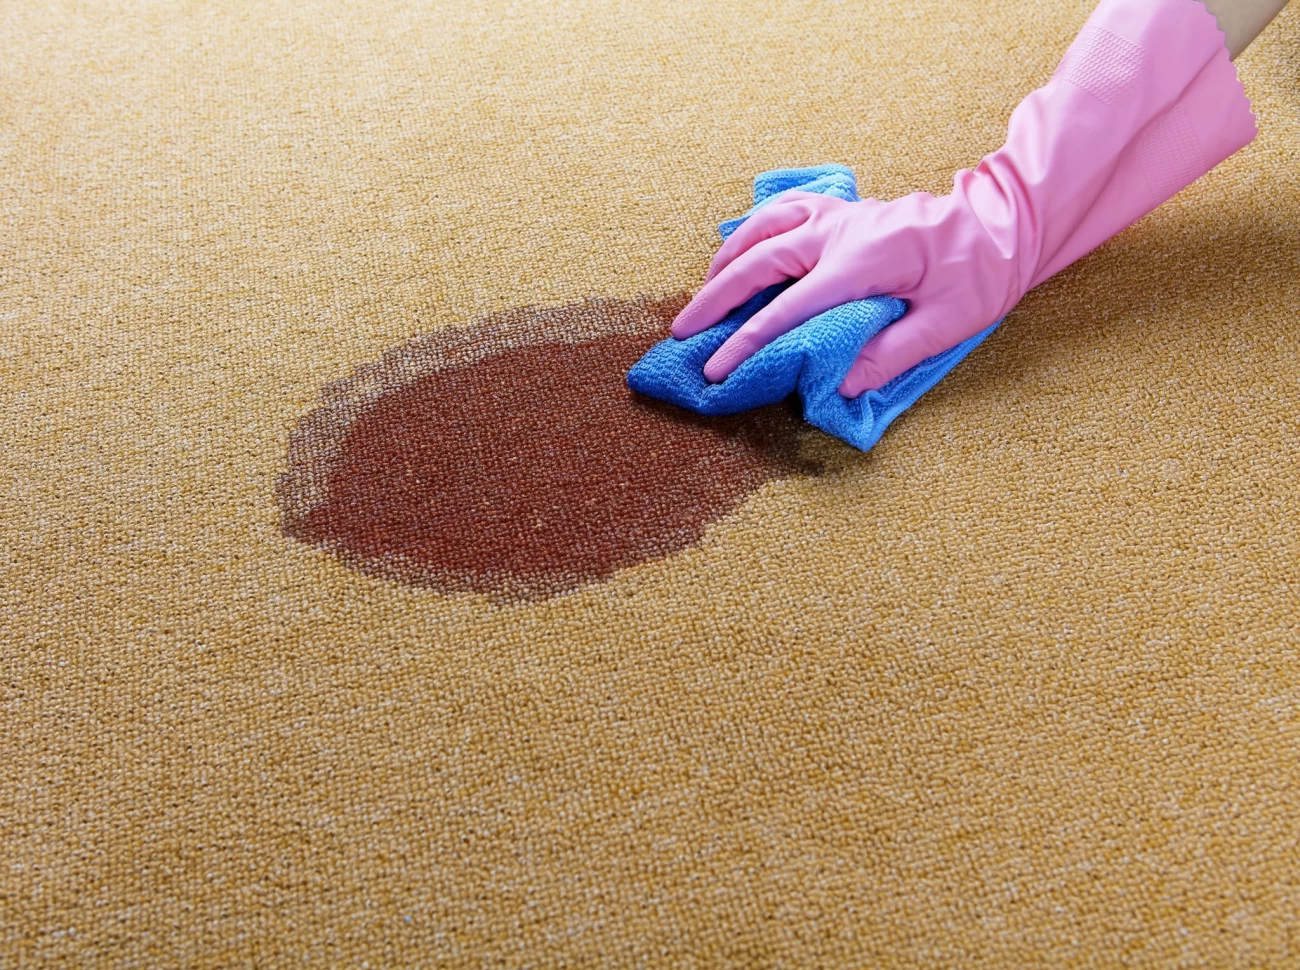 روش ساده برای پاک کردن لکه نوشابه از روی فرش